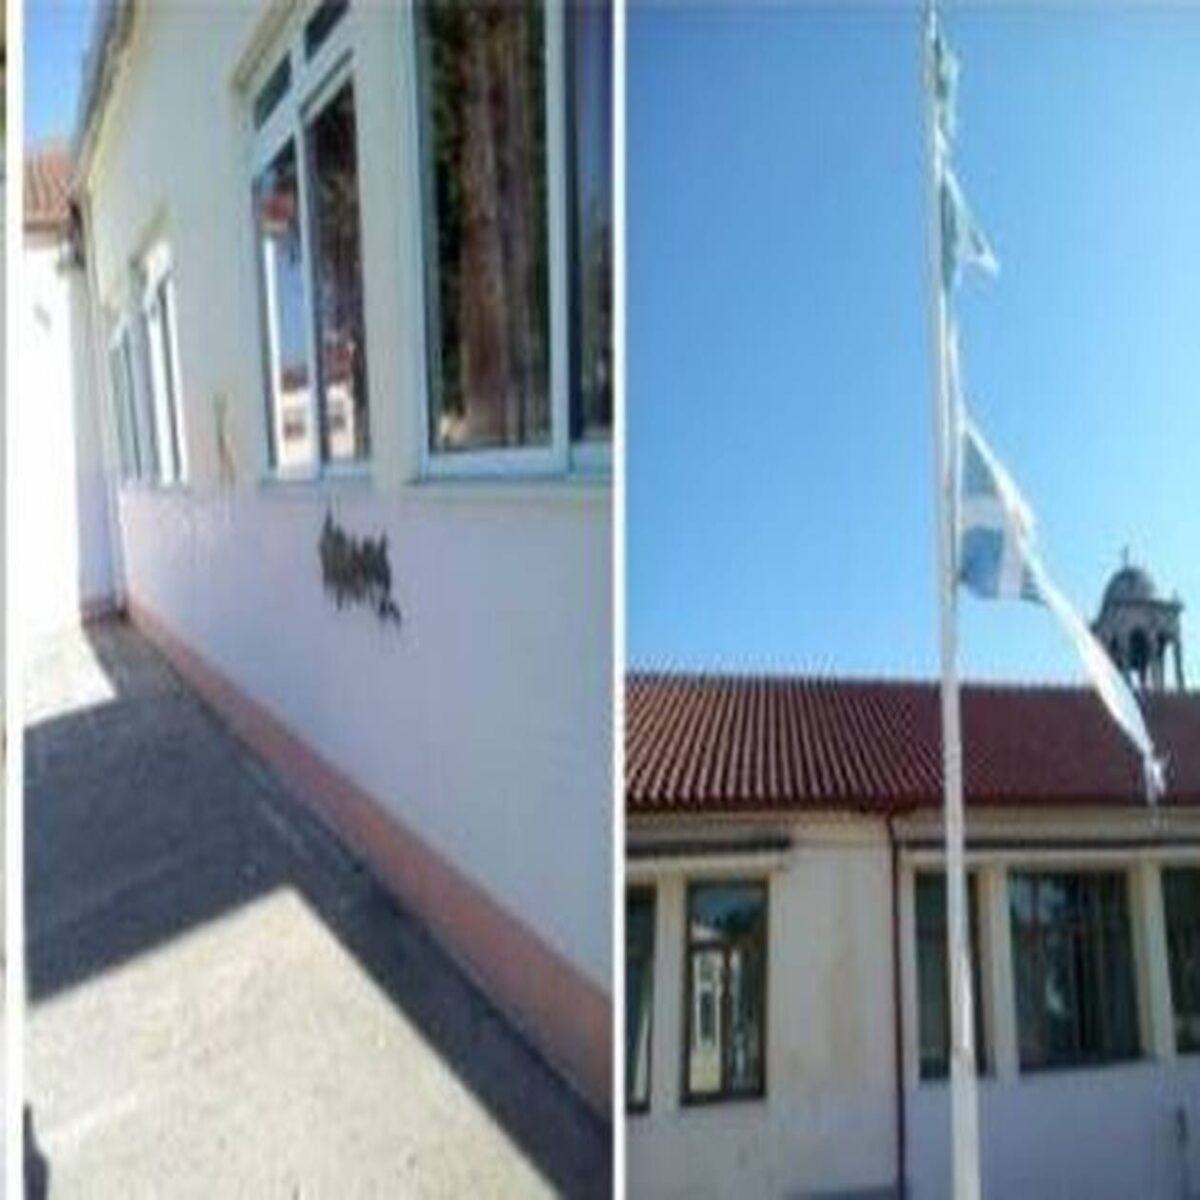 Καρδίτσα σχολείο: Έσκισαν την Ελληνική σημαία σε δημοτικό σχολείο της Καρδίτσας – Τραγικές εικόνες